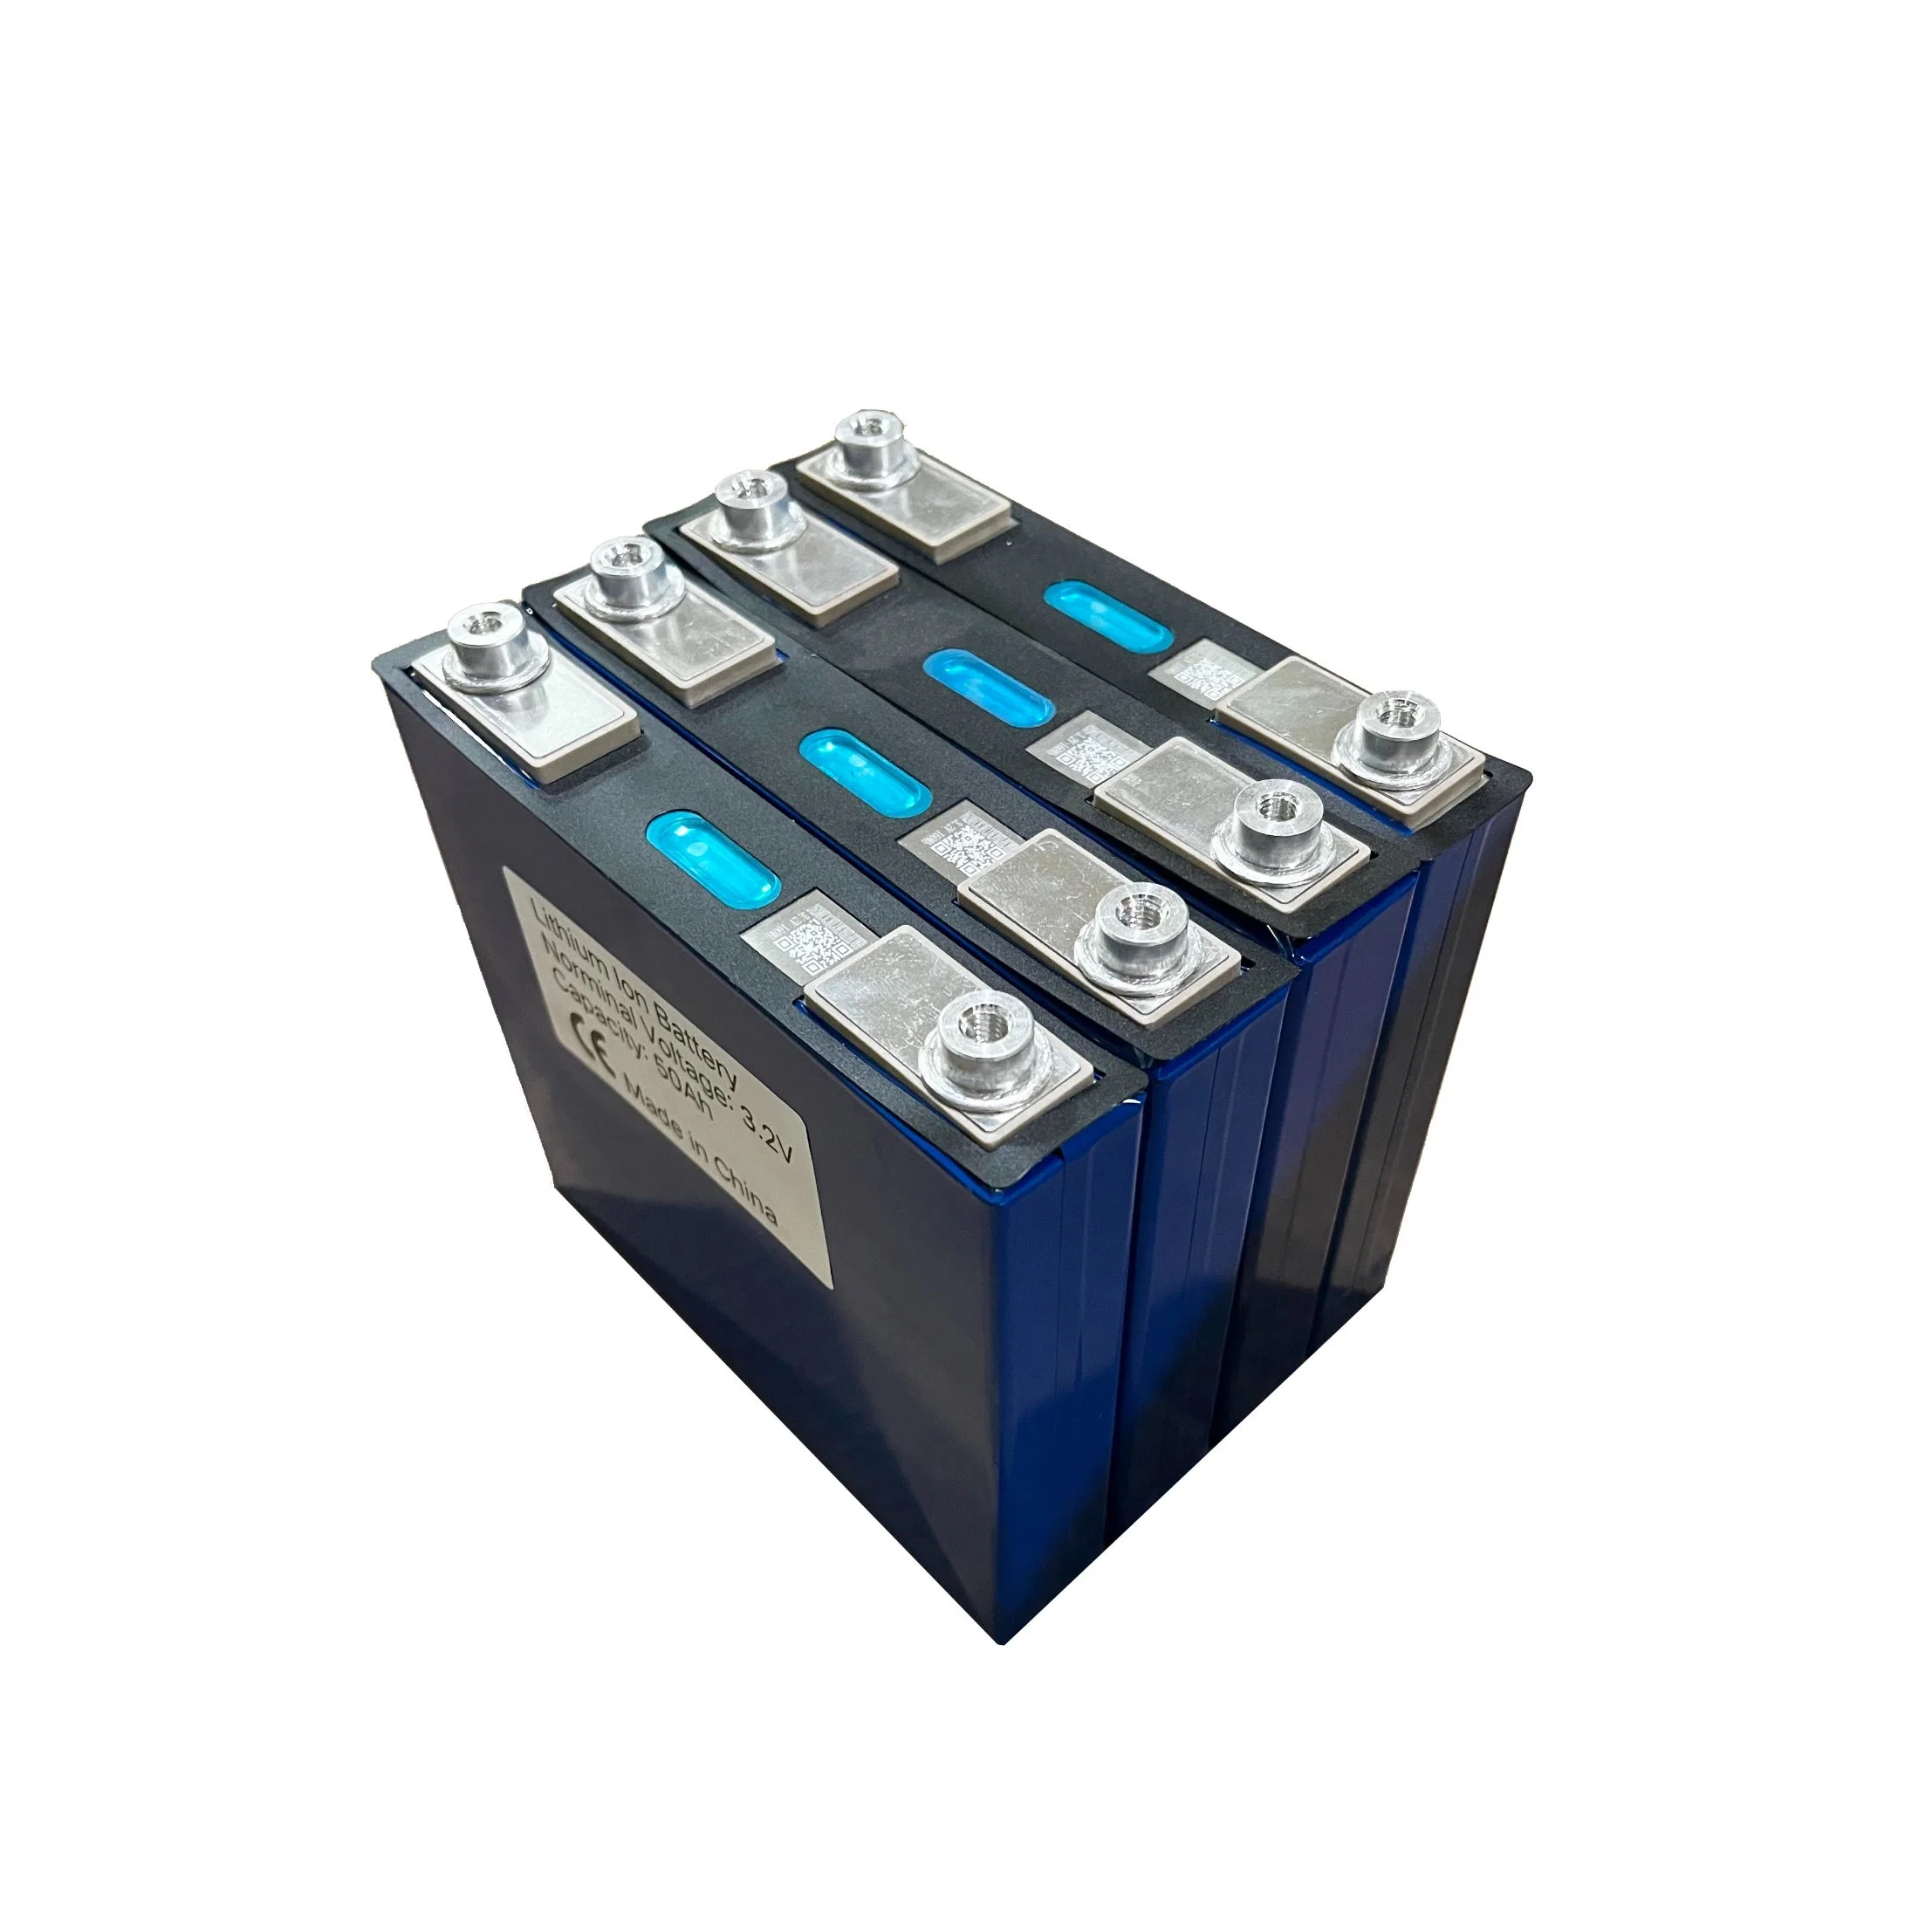 Призматический аккумулятор Scвольтового напряжения 3,2 в 52 а класса а LiFePO4 Ячейка для электромобилей Бытовая система хранения энергии